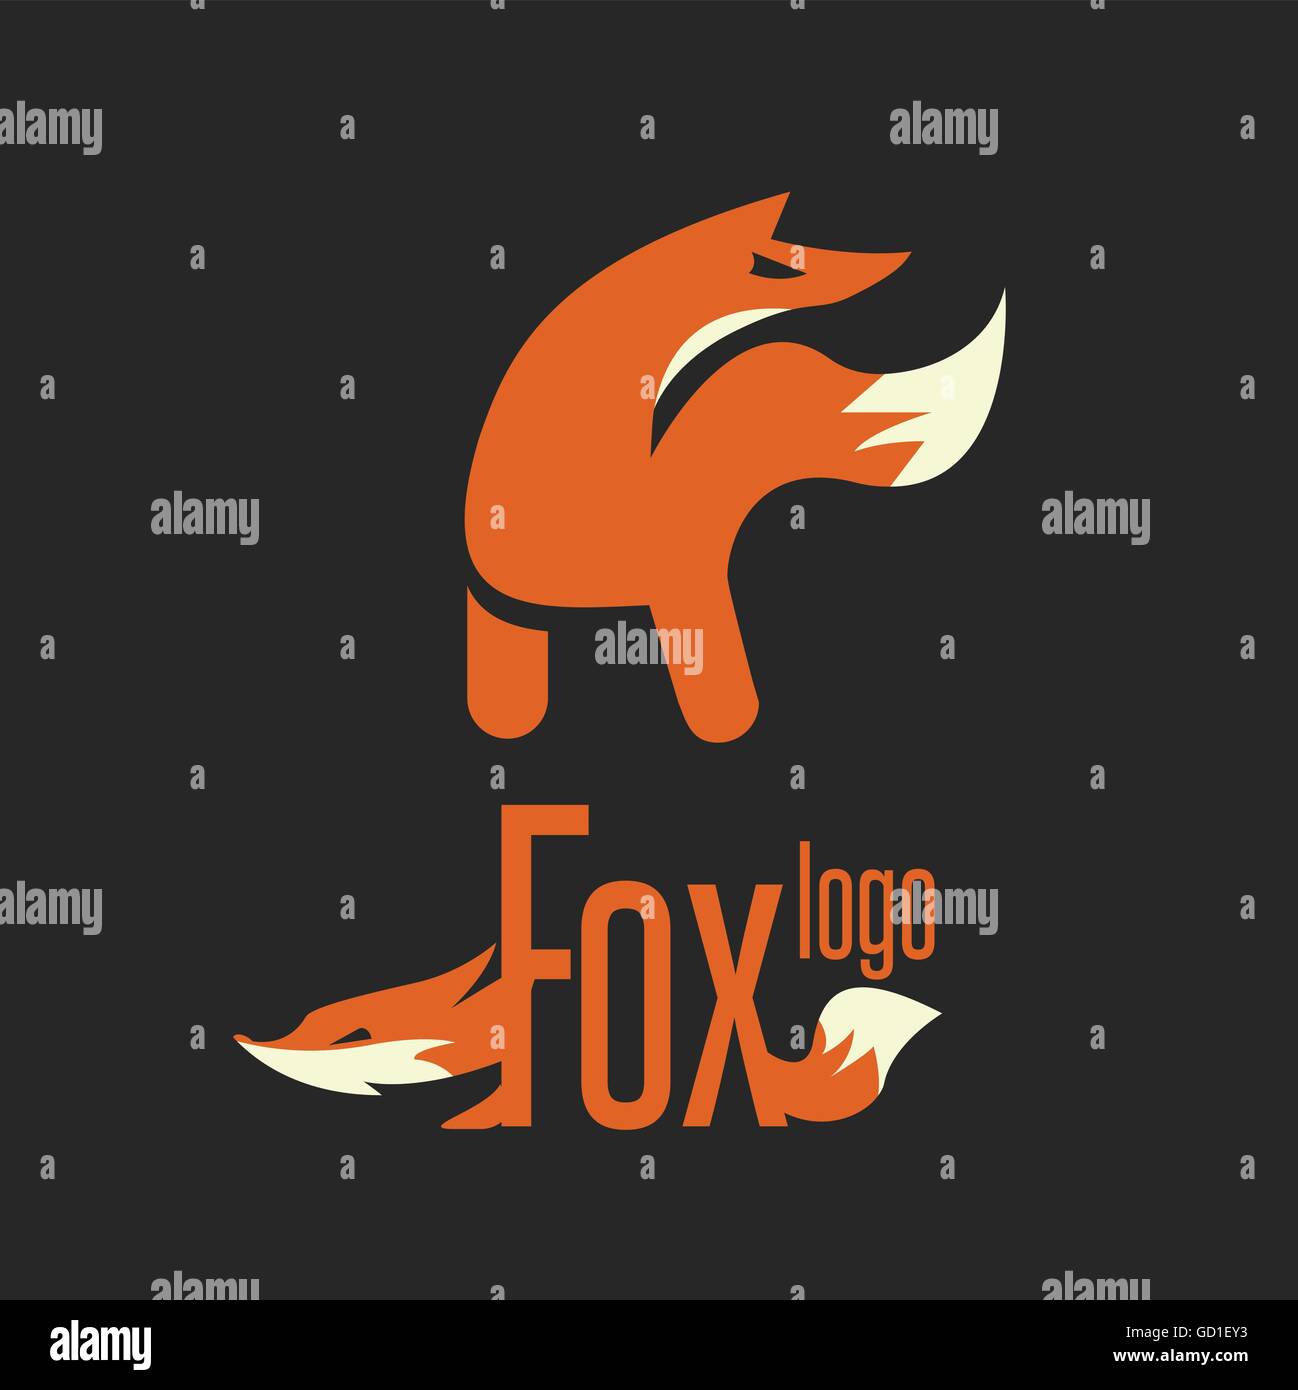 Fox logo conçu de façon simple, de sorte qu'il peut être utiliser pour de multiples propose comme marque, logo, symbole ou icône. Illustration de Vecteur